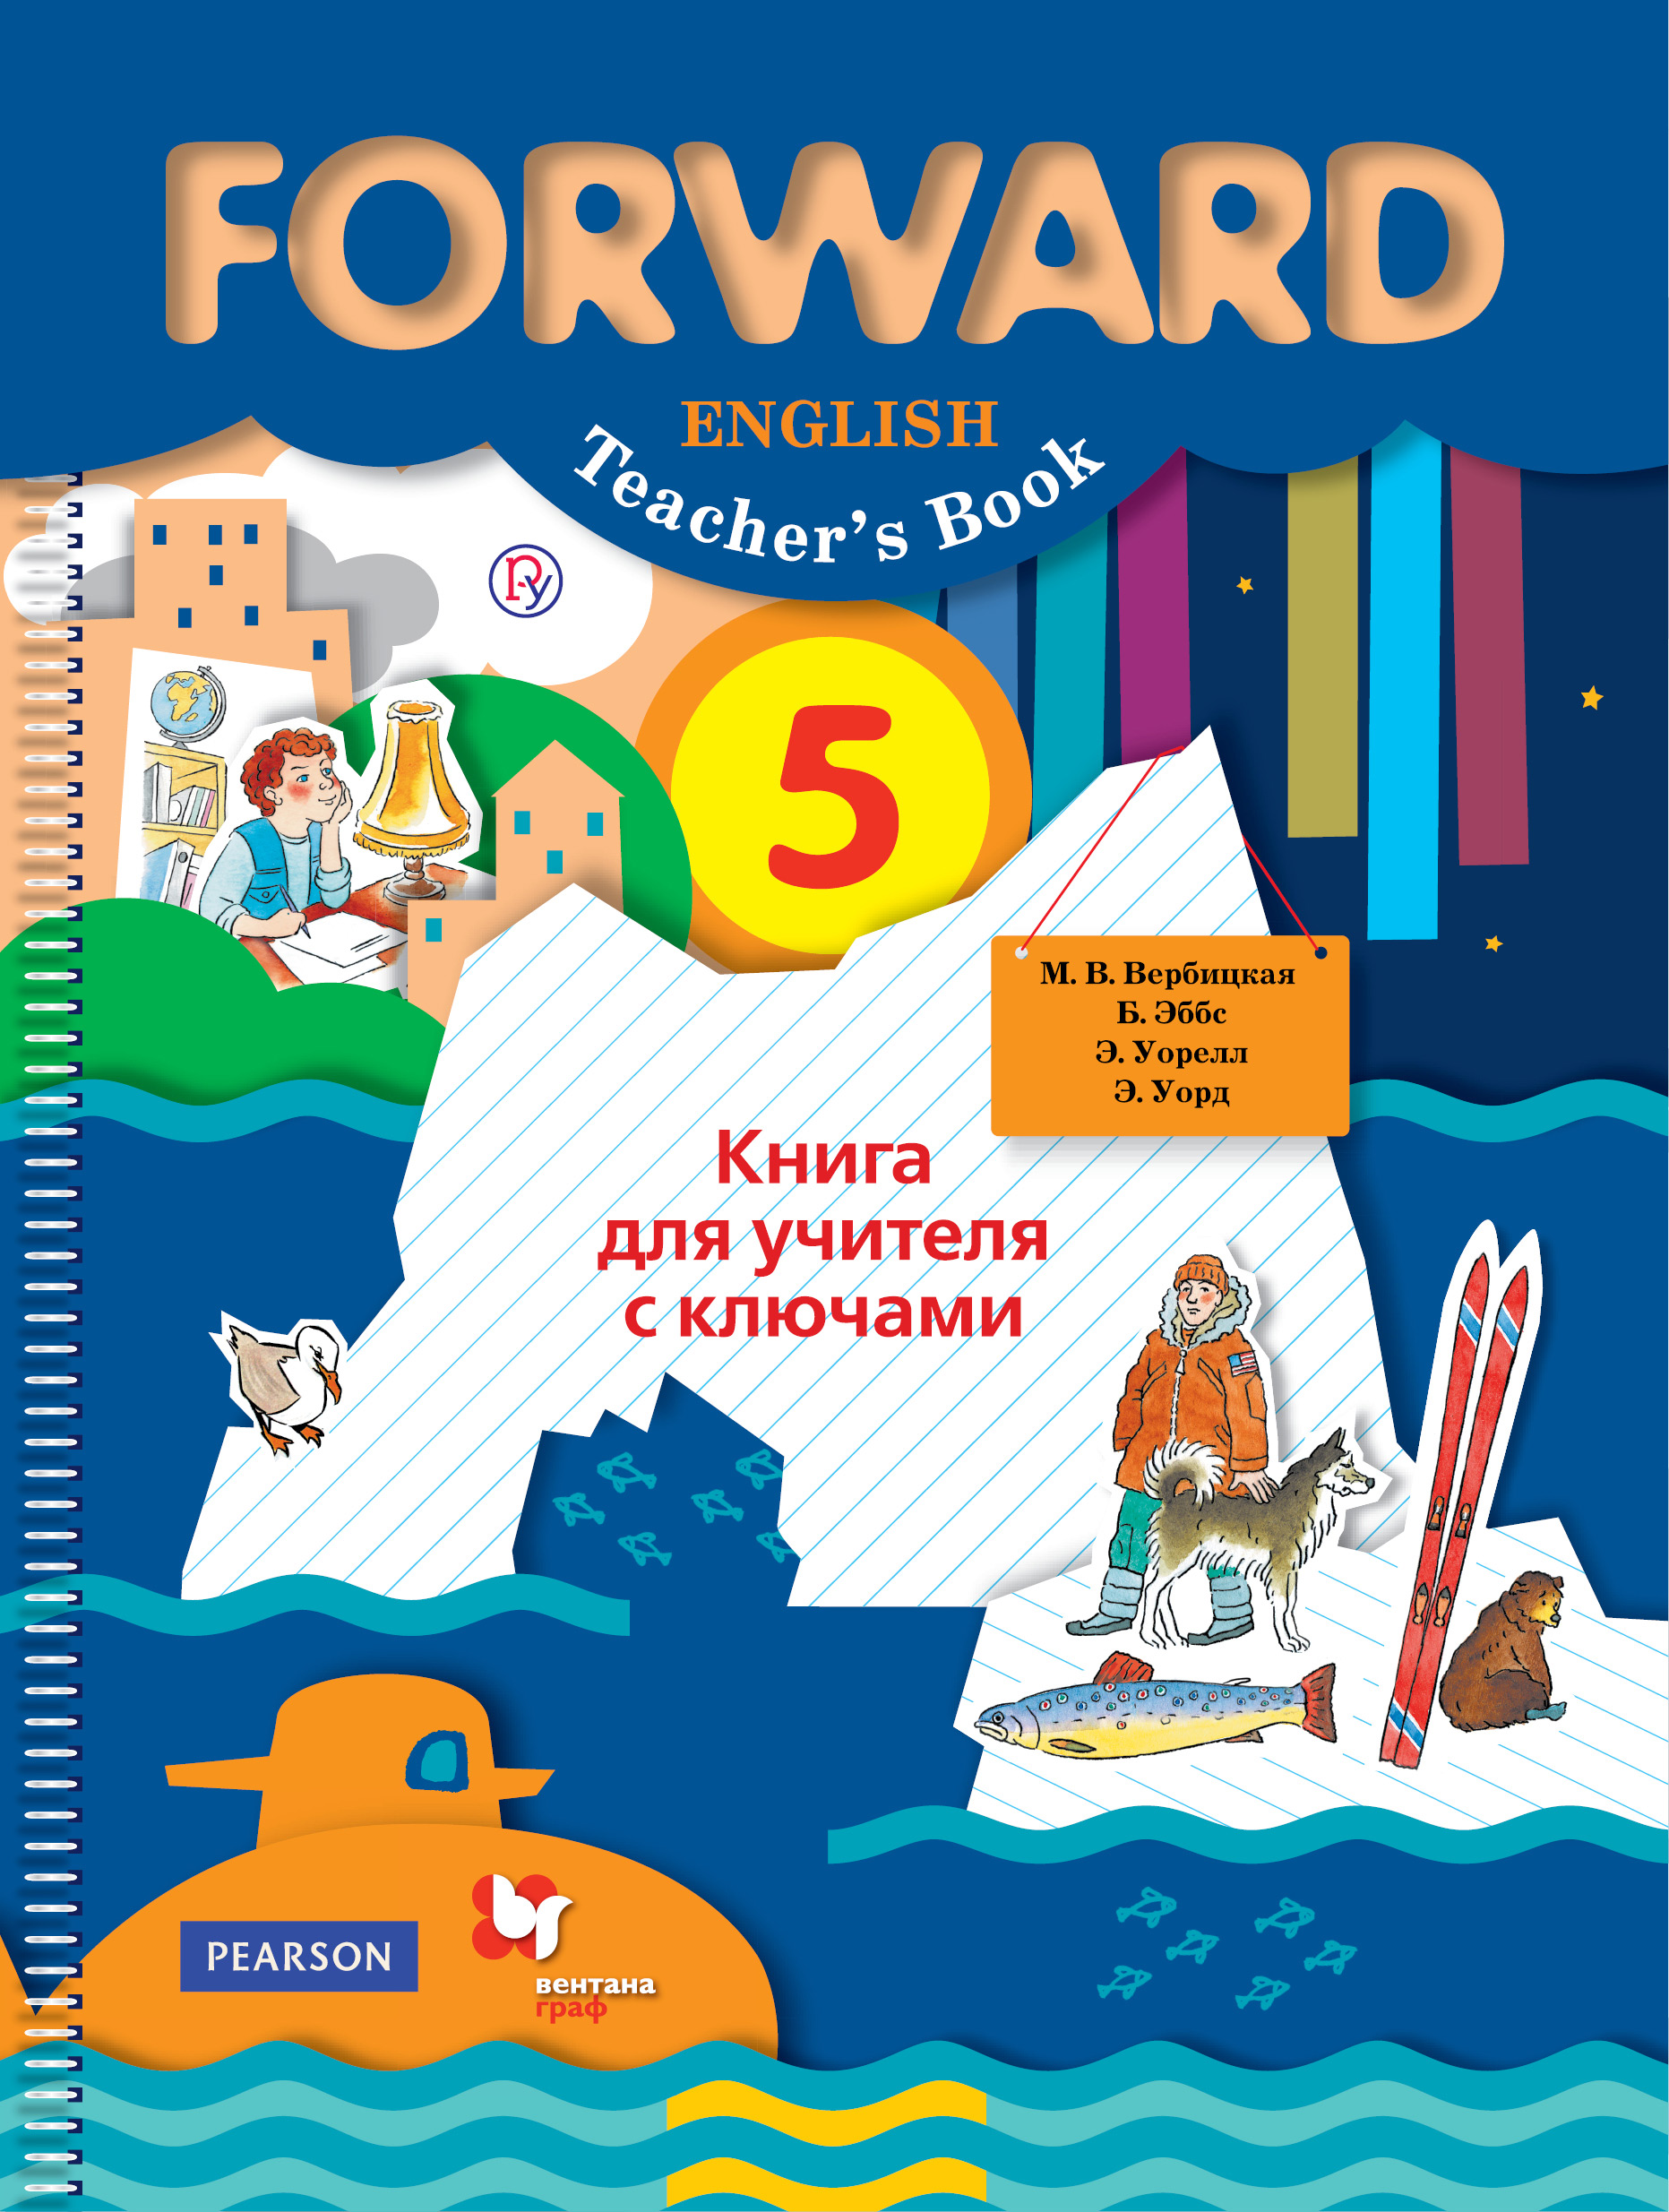 Английский 5 класс м в вербицкой. Форвард англ 5 Вербицкая. УМК forward 5 класс. Forward книга для учителя.